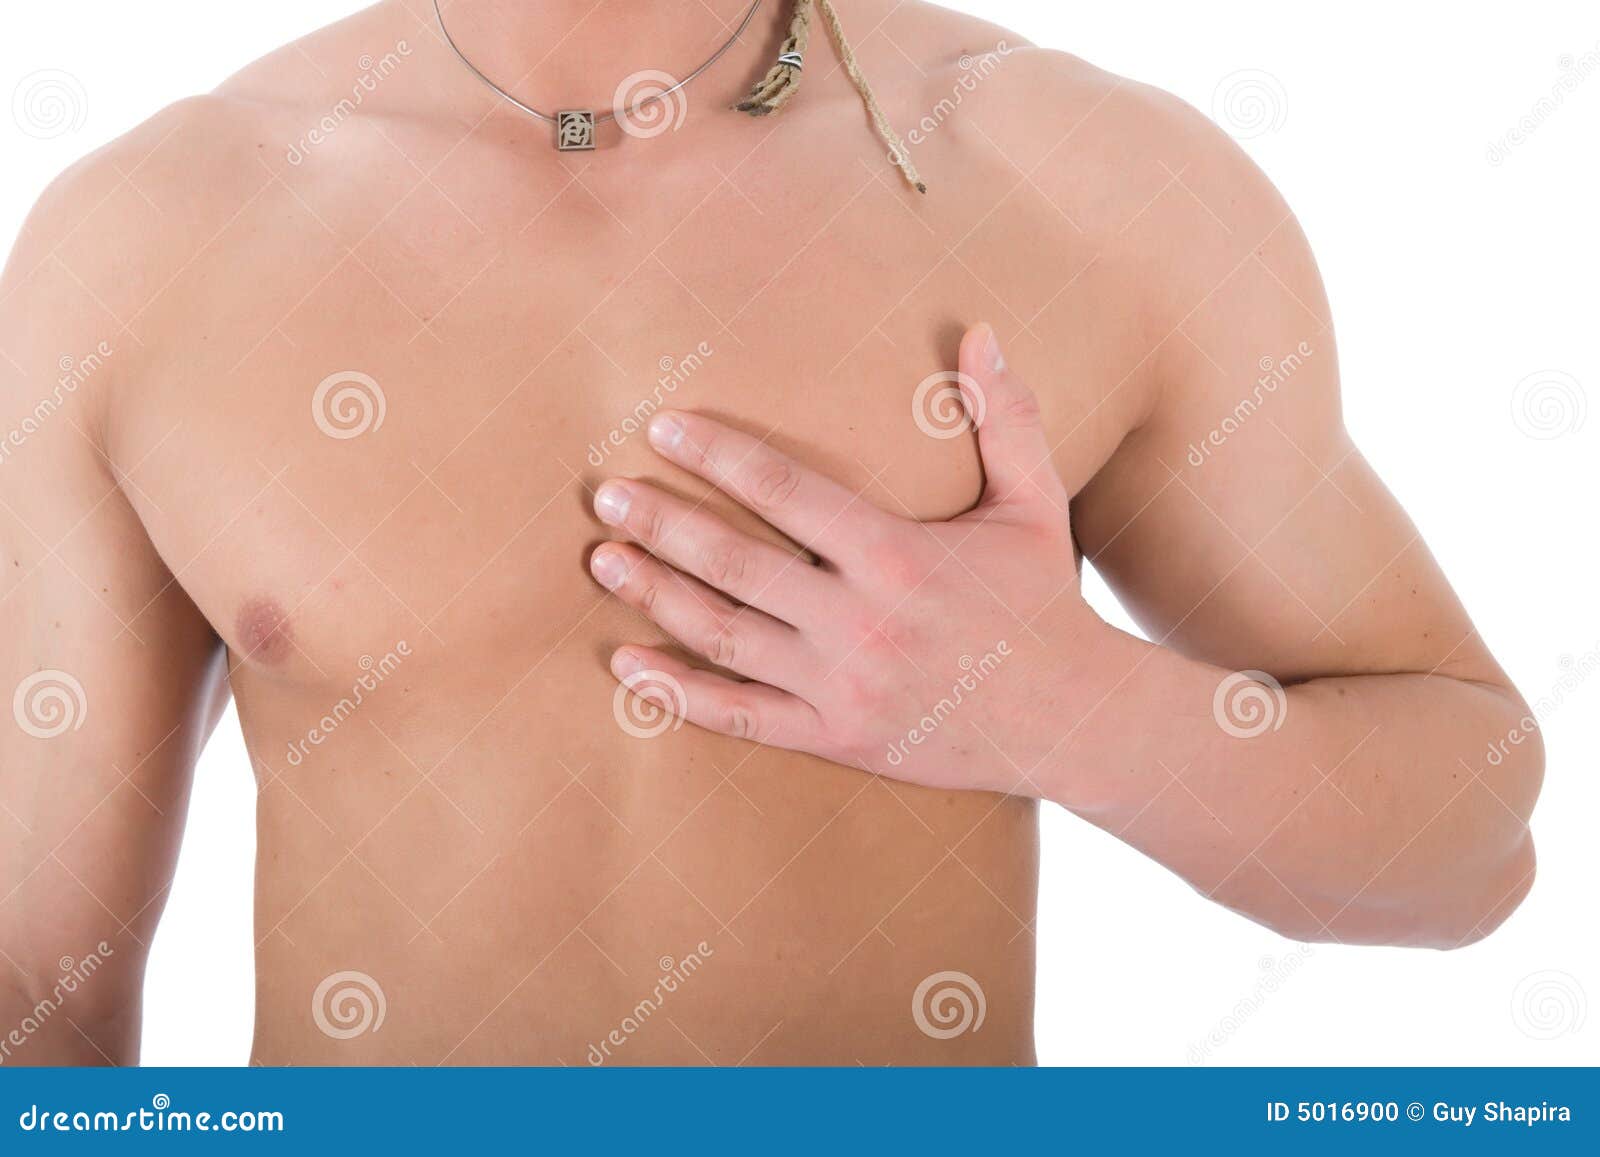 шарик внутри груди у мужчин фото 48